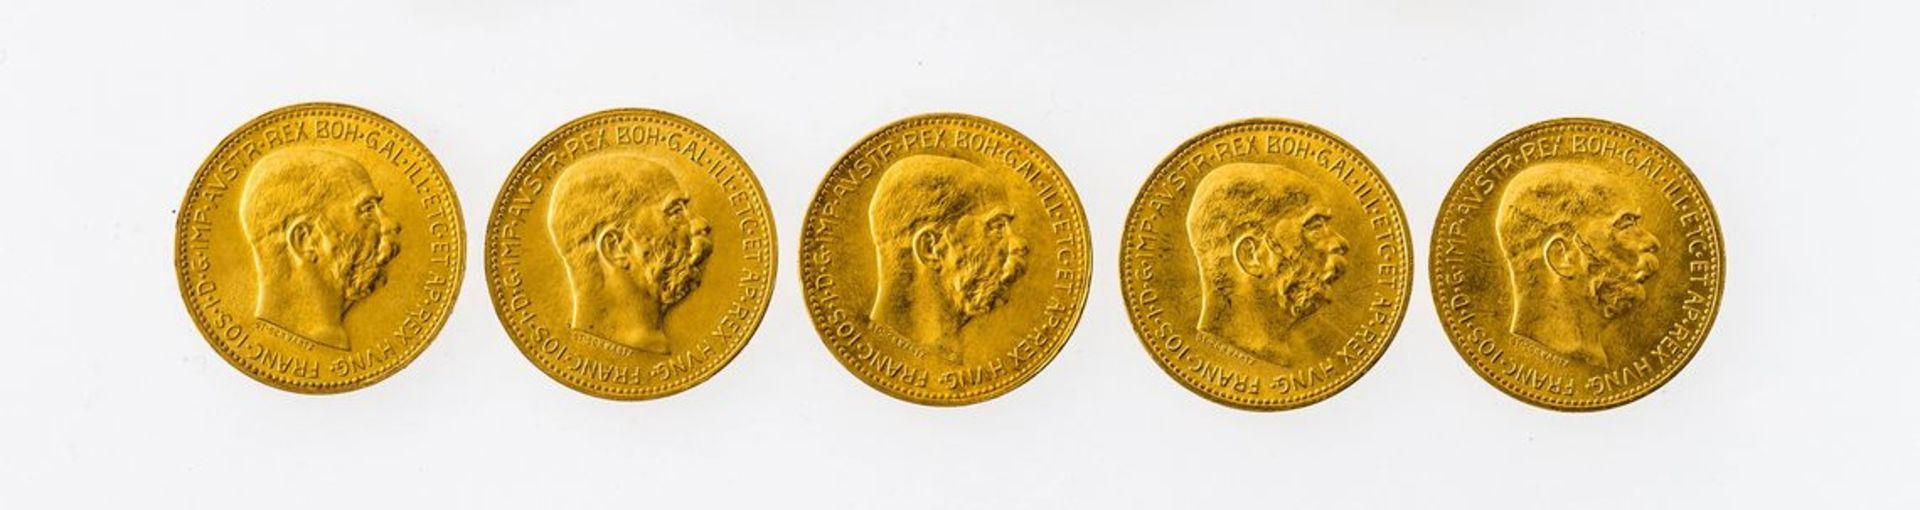 Österreich5 x 20 Kronen 1915. GG 900, insgesamt 33,85 g.